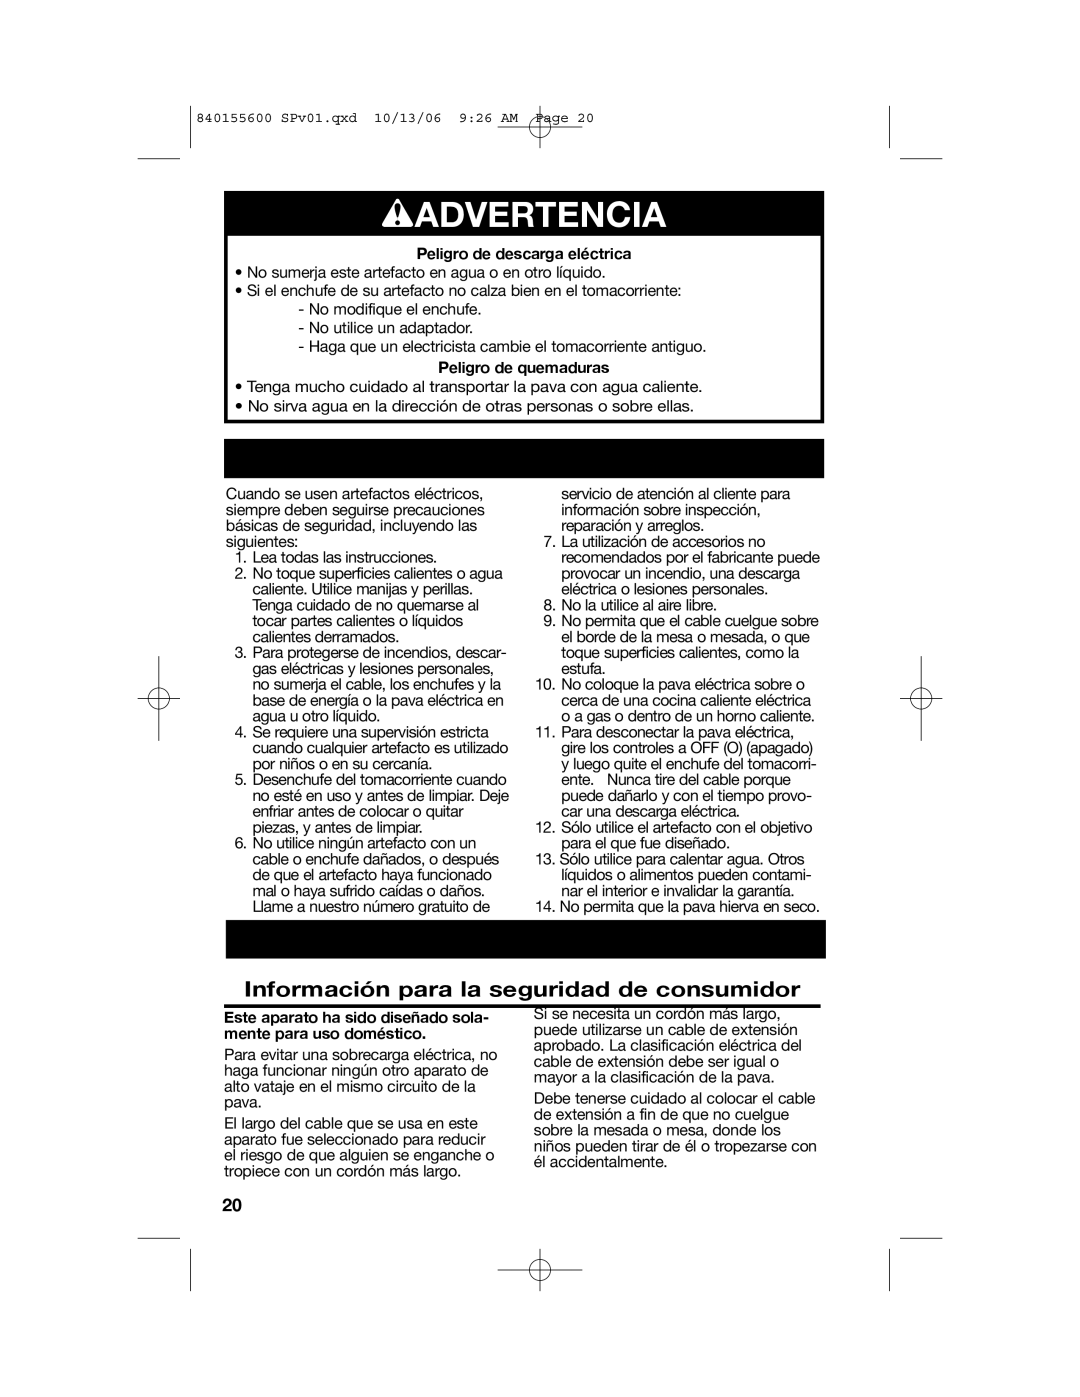 Hamilton Beach 40990 manual wADVERTENCIA, Información para la seguridad de consumidor, Peligro de descarga eléctrica 